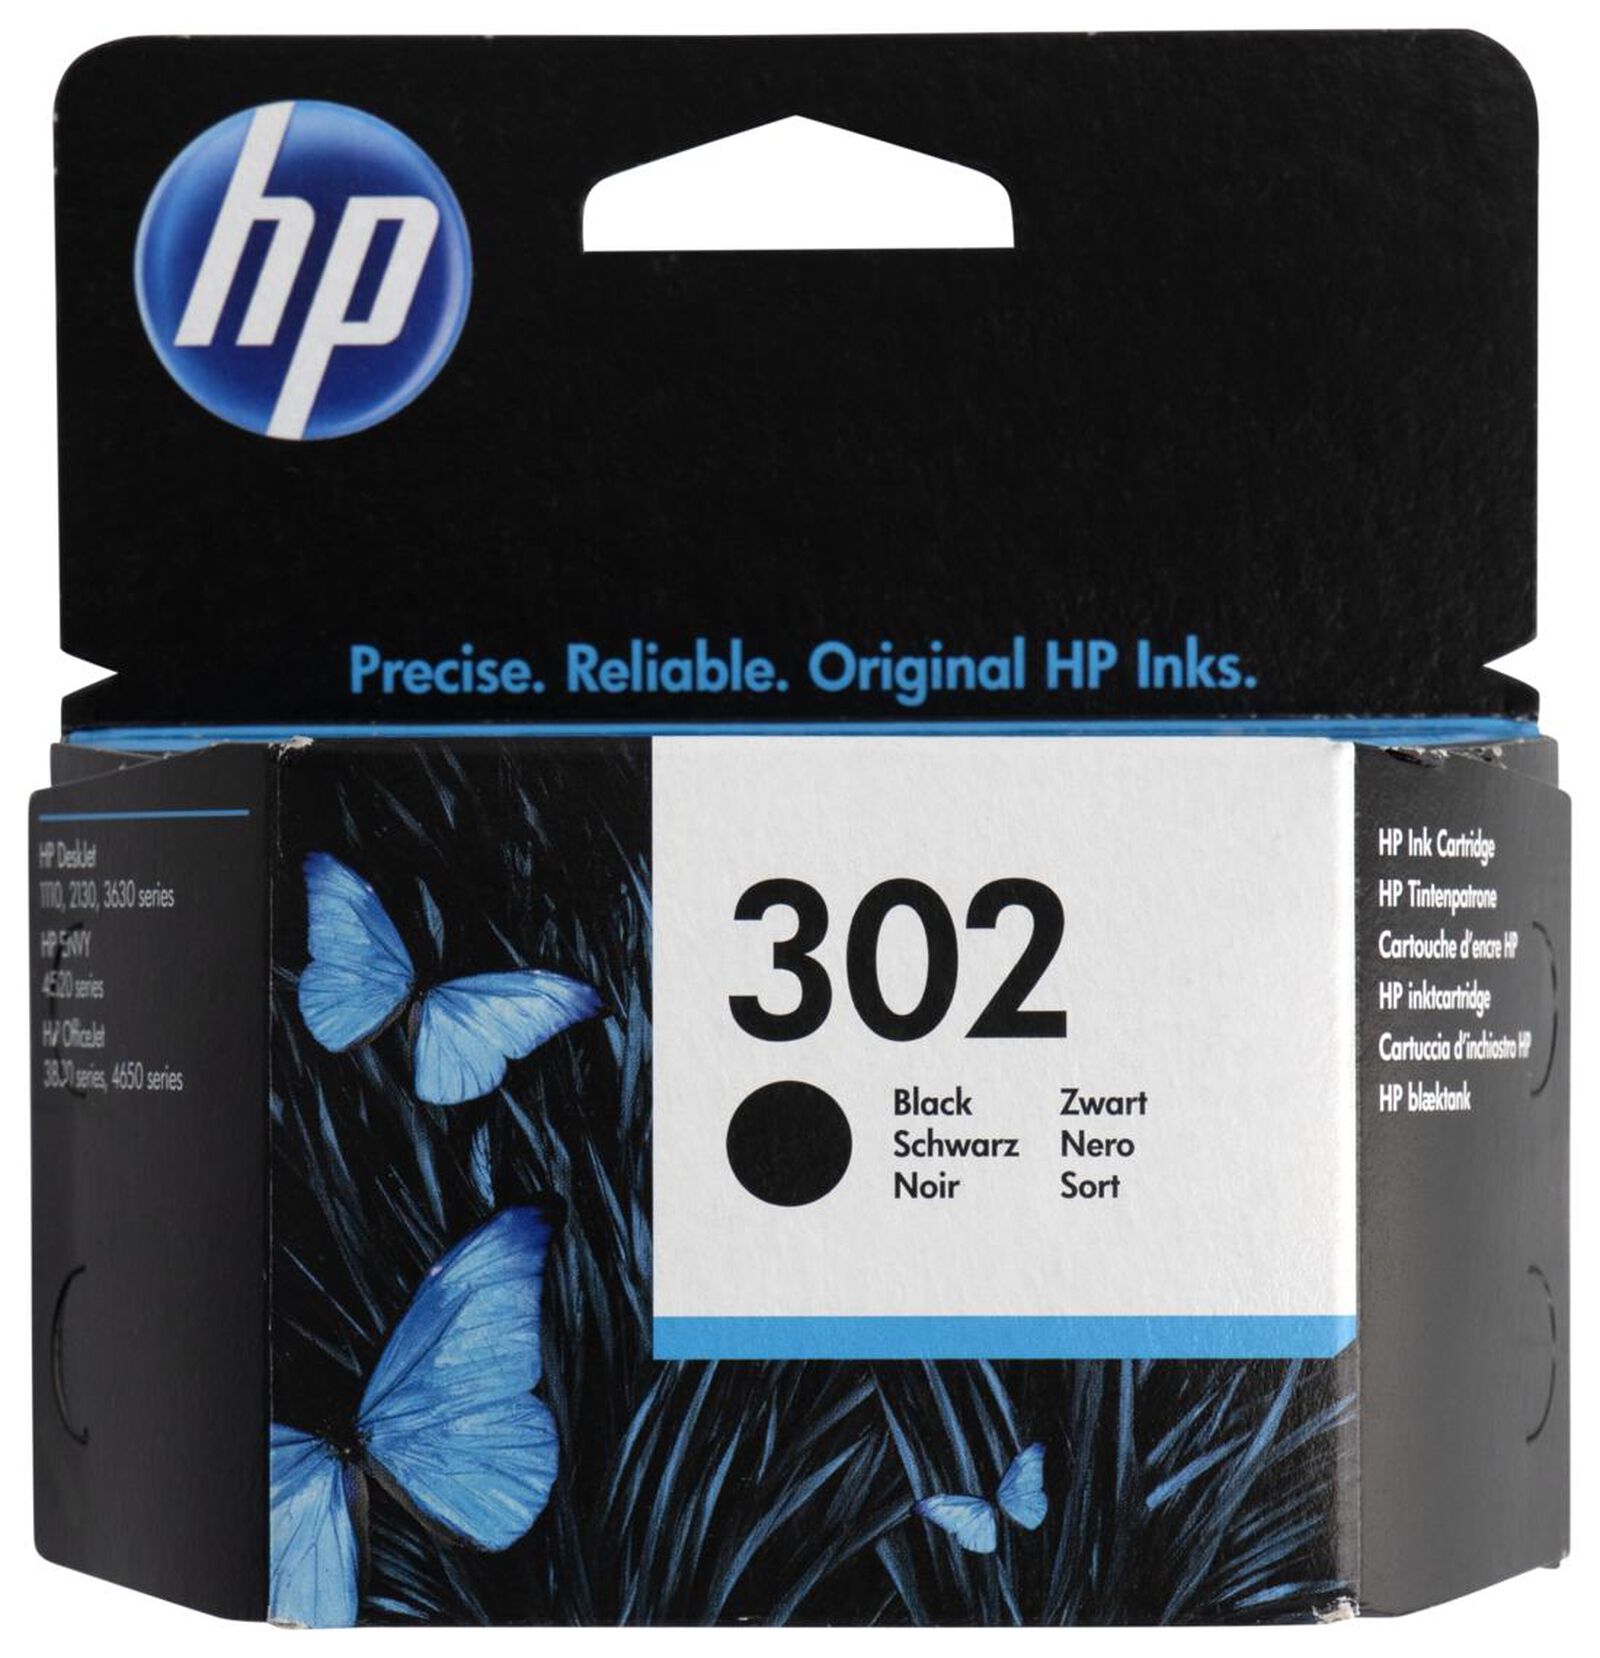 Cartouche HP 302 - Vente d'imprimantes et cartouches d'encre pas